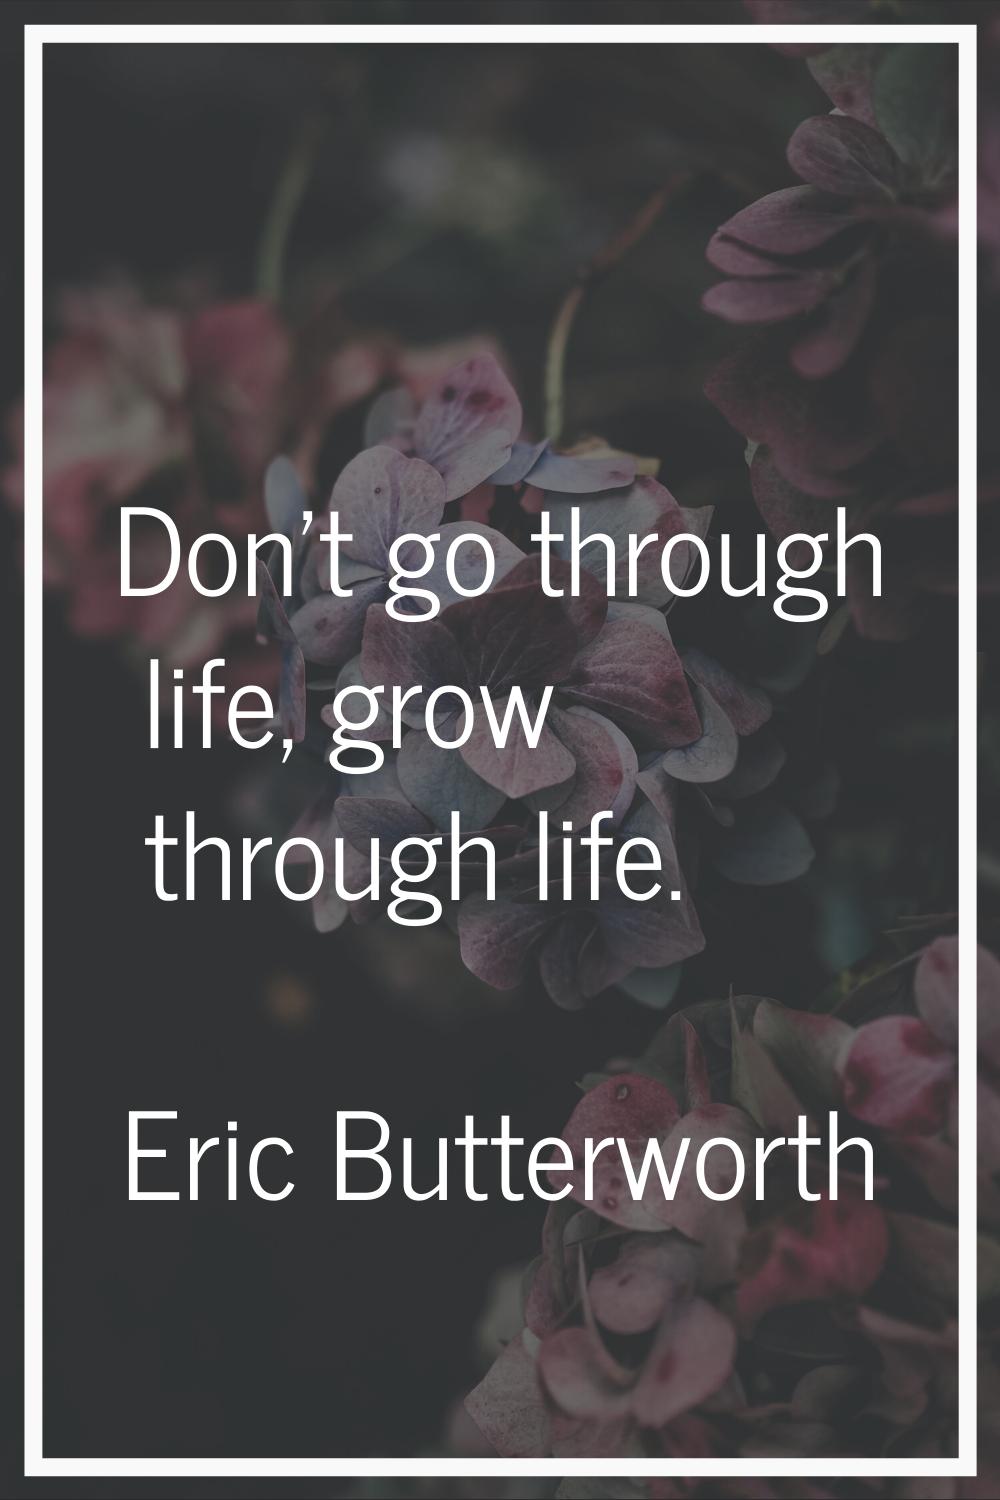 Don't go through life, grow through life.